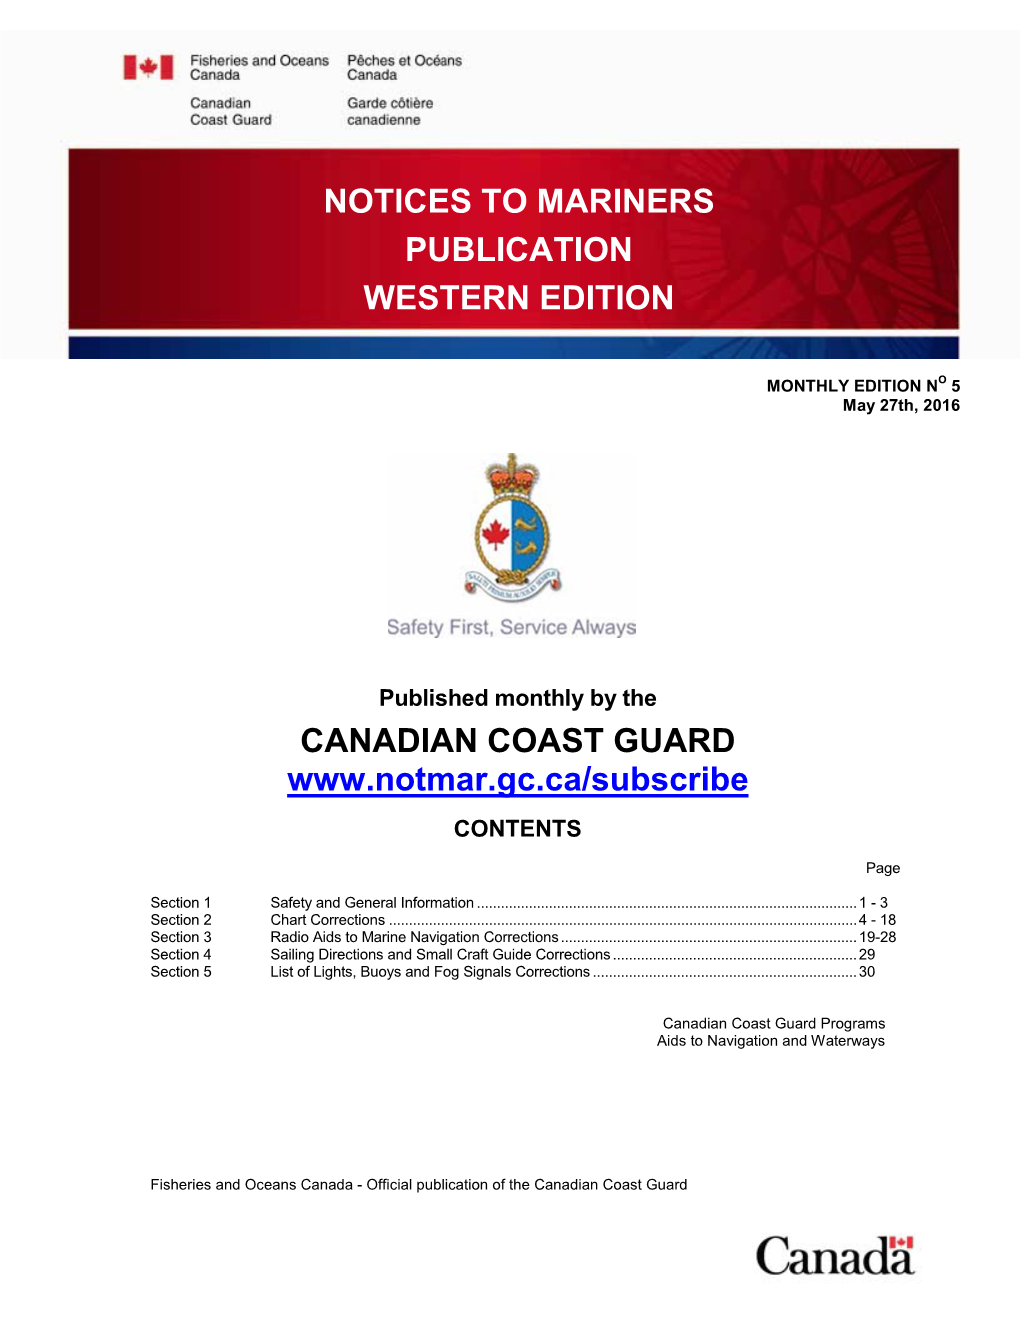 Ed. Western Publication